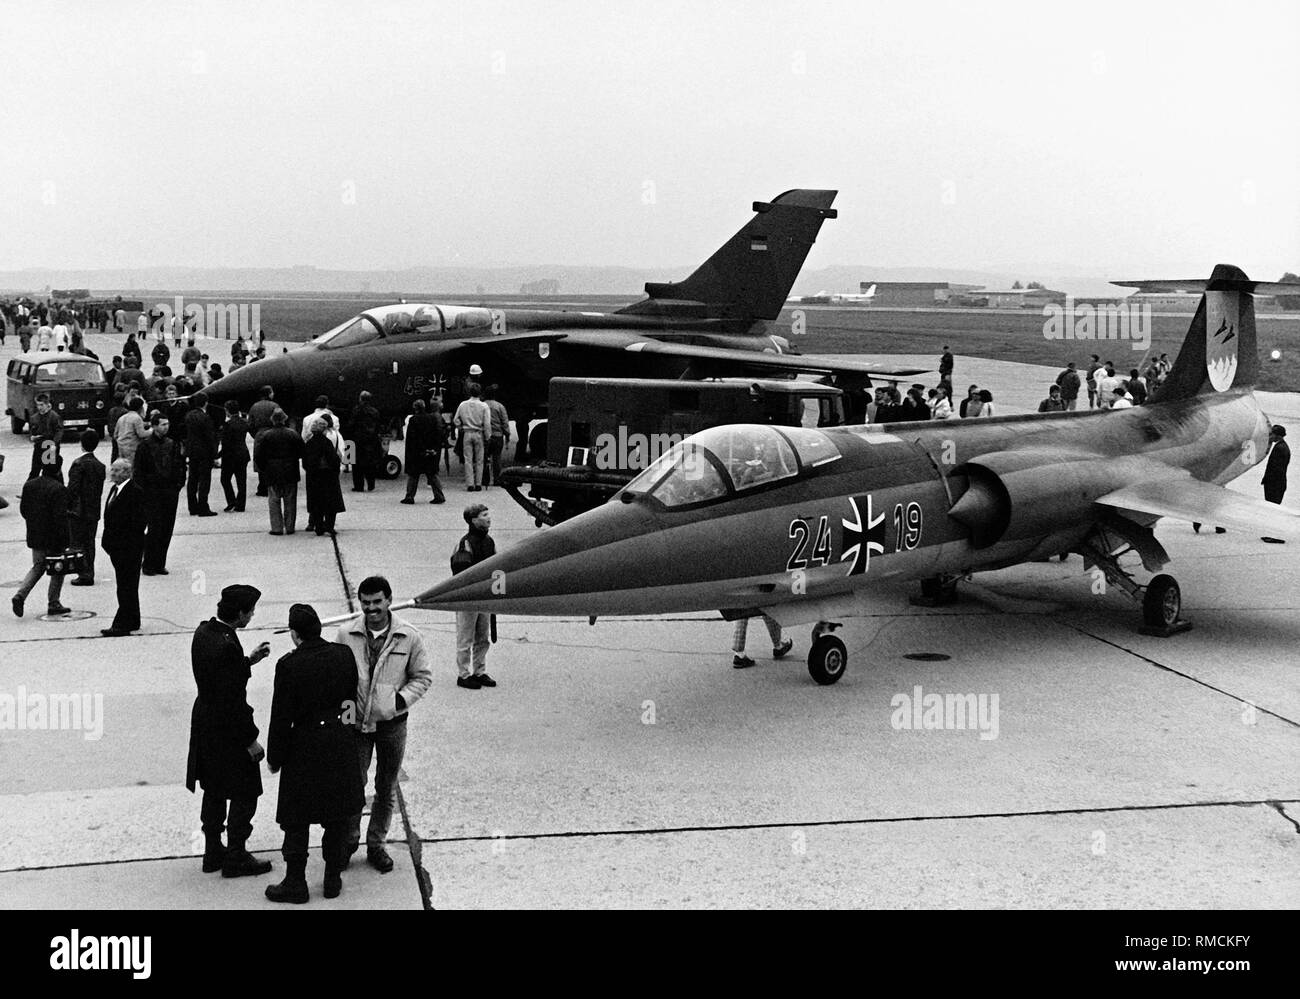 À la base aérienne de l'Jagdbombergeschwader 34 Memmingen dans le dernier F-104 (avant) opérant dans la Bundeswehr (armée fédérale allemande) est en cours de démantèlement. Derrière, un Panavia Tornado. Banque D'Images